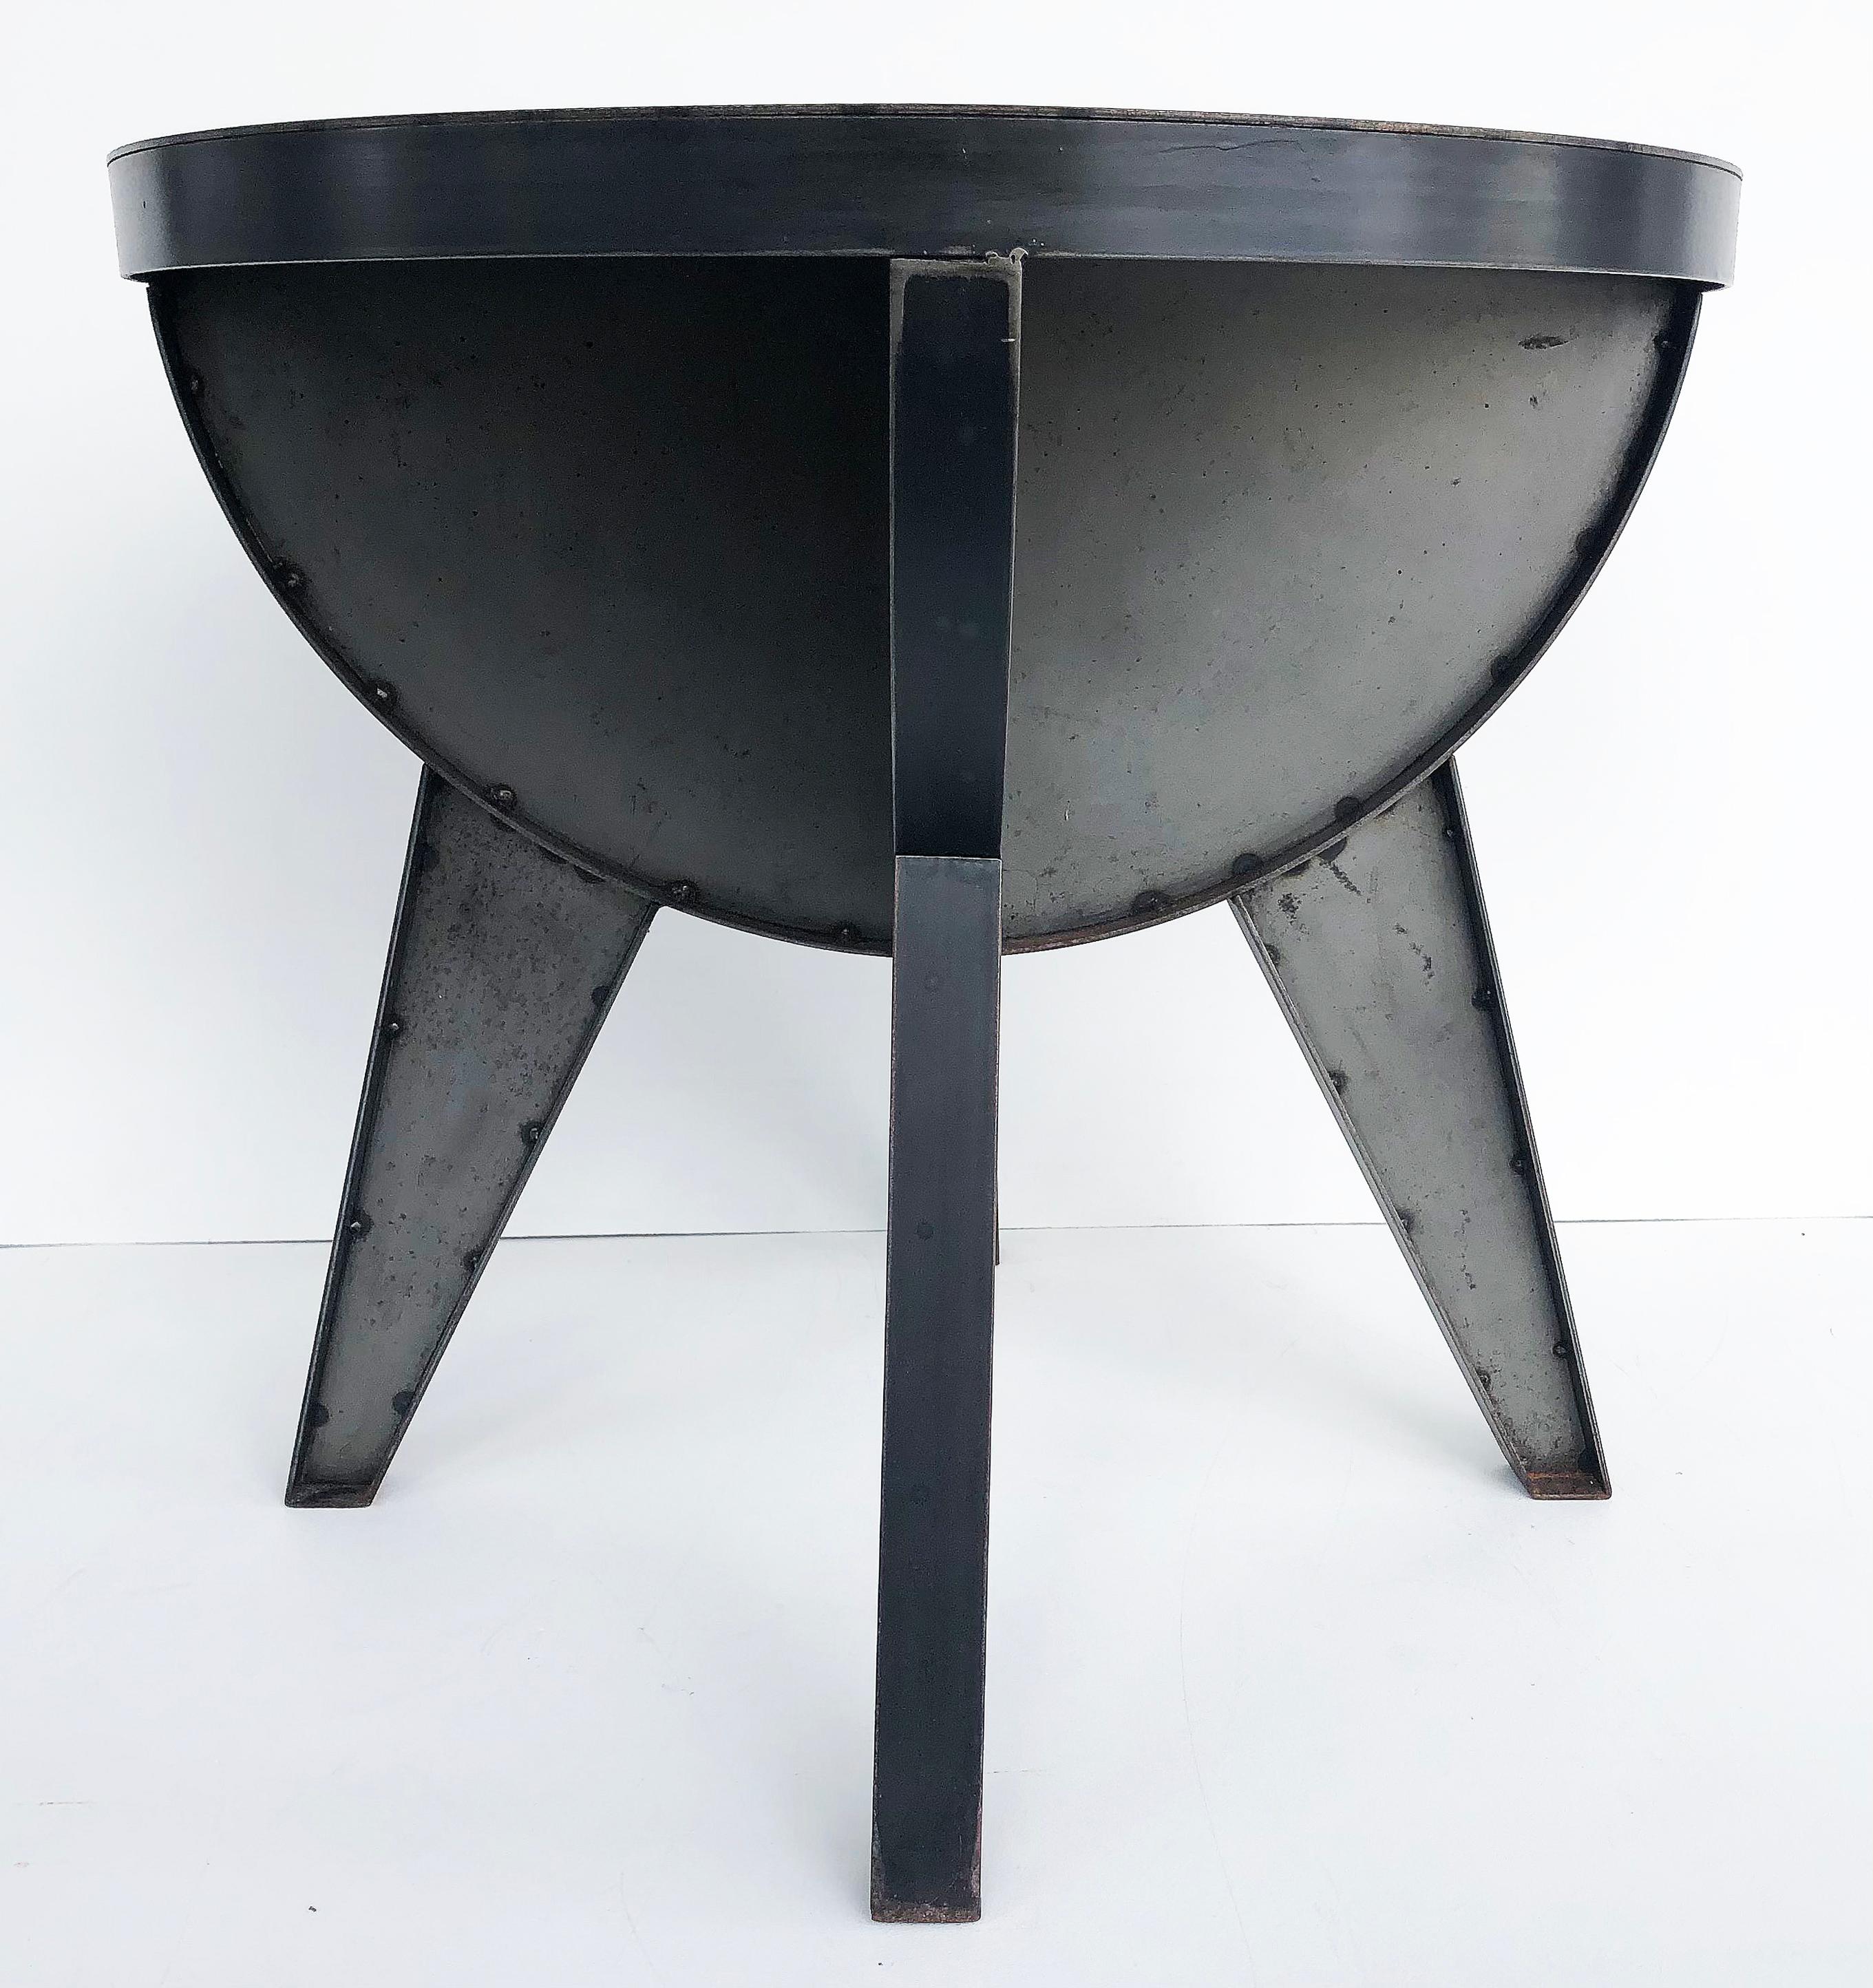 Sheet Metal Sputnik Studio Industrial Recycled Steel Side Tables by Kevin Shahan